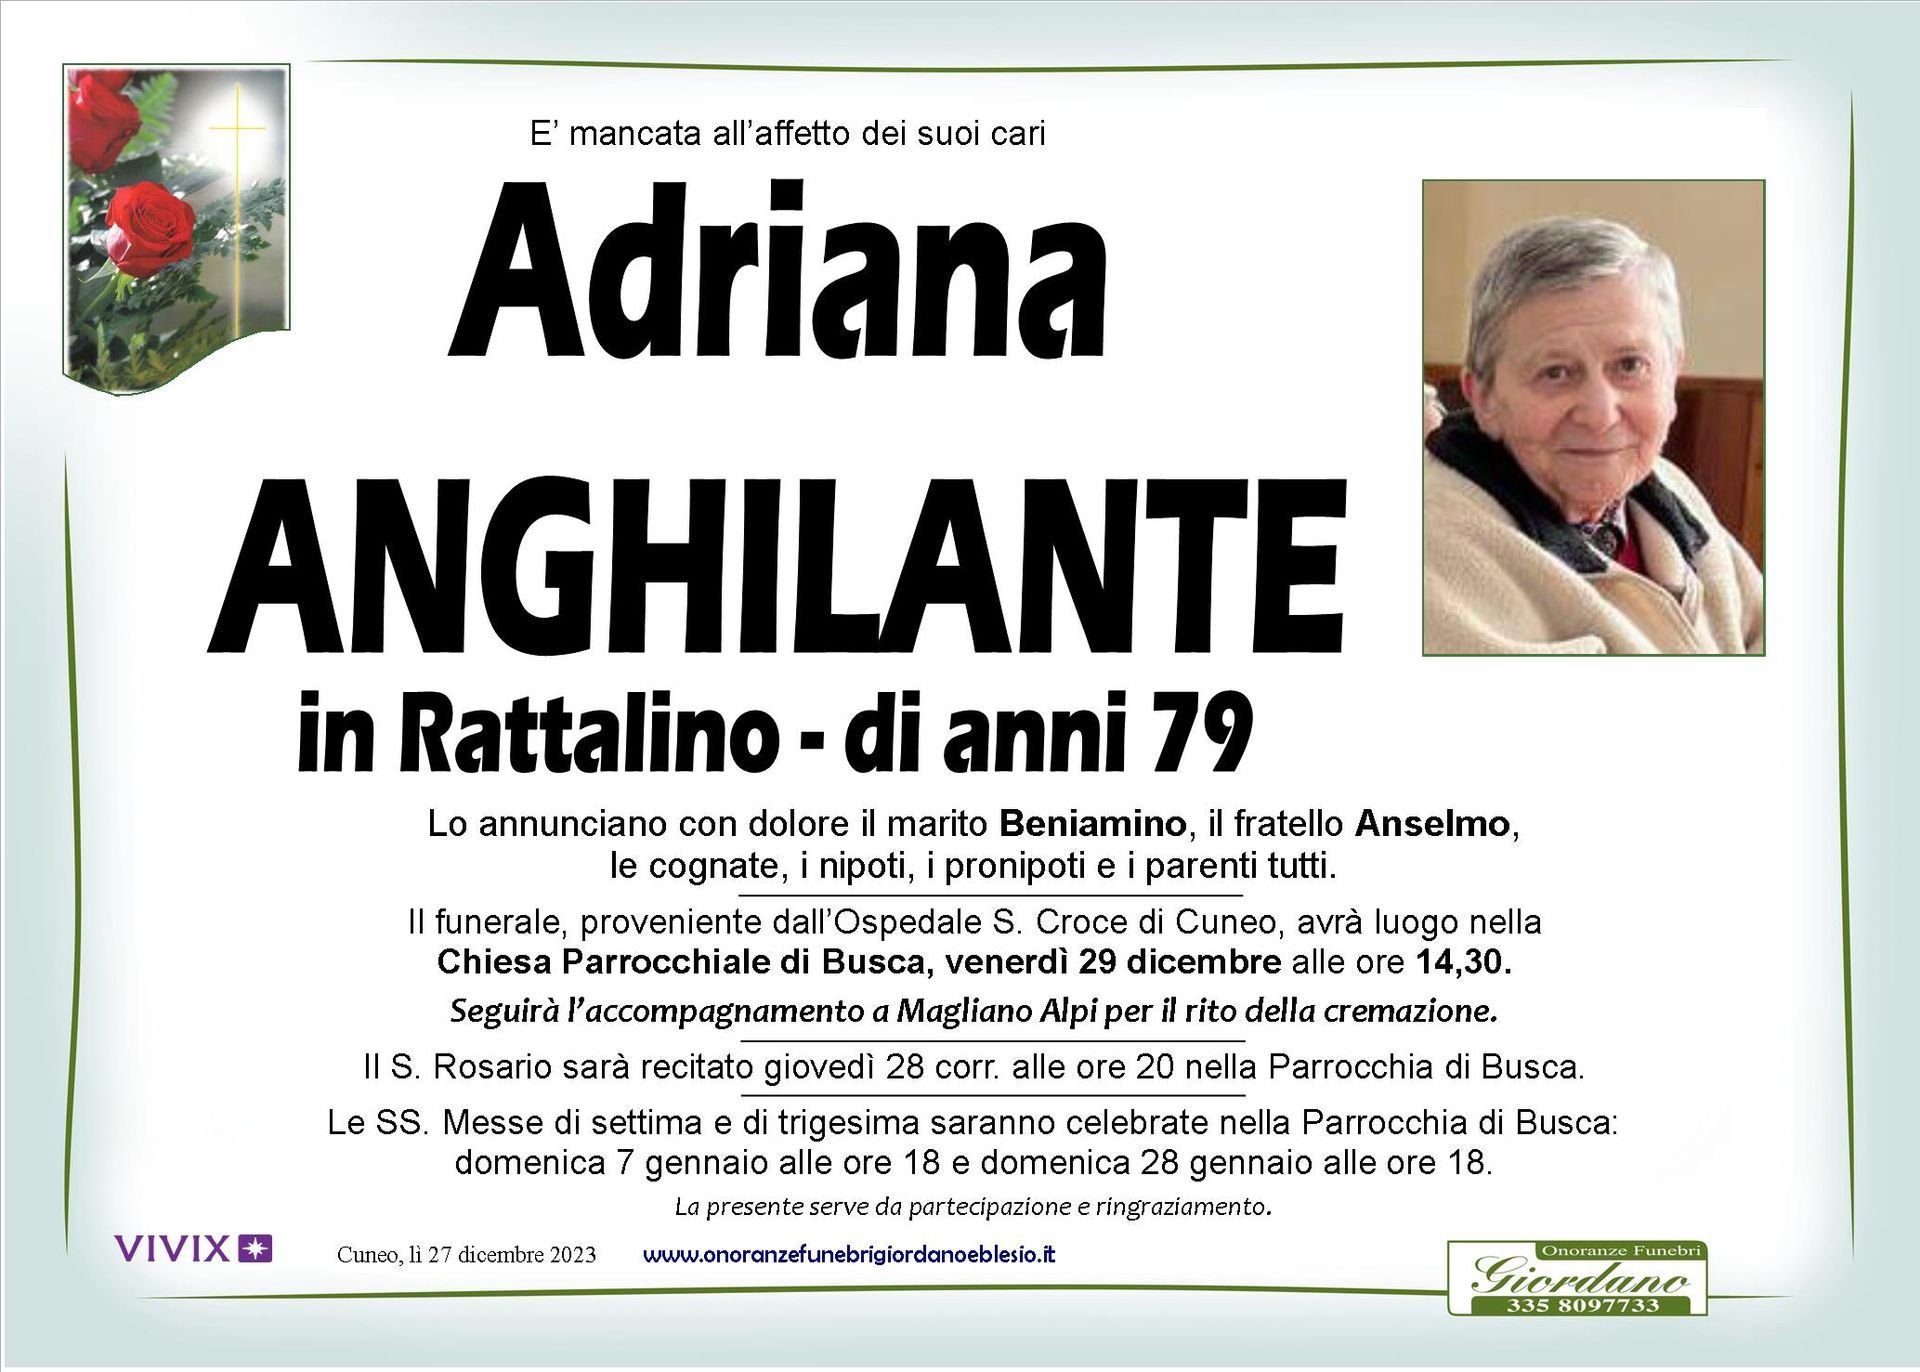 necrologio ANGHILANTE Adriana in Rattalino